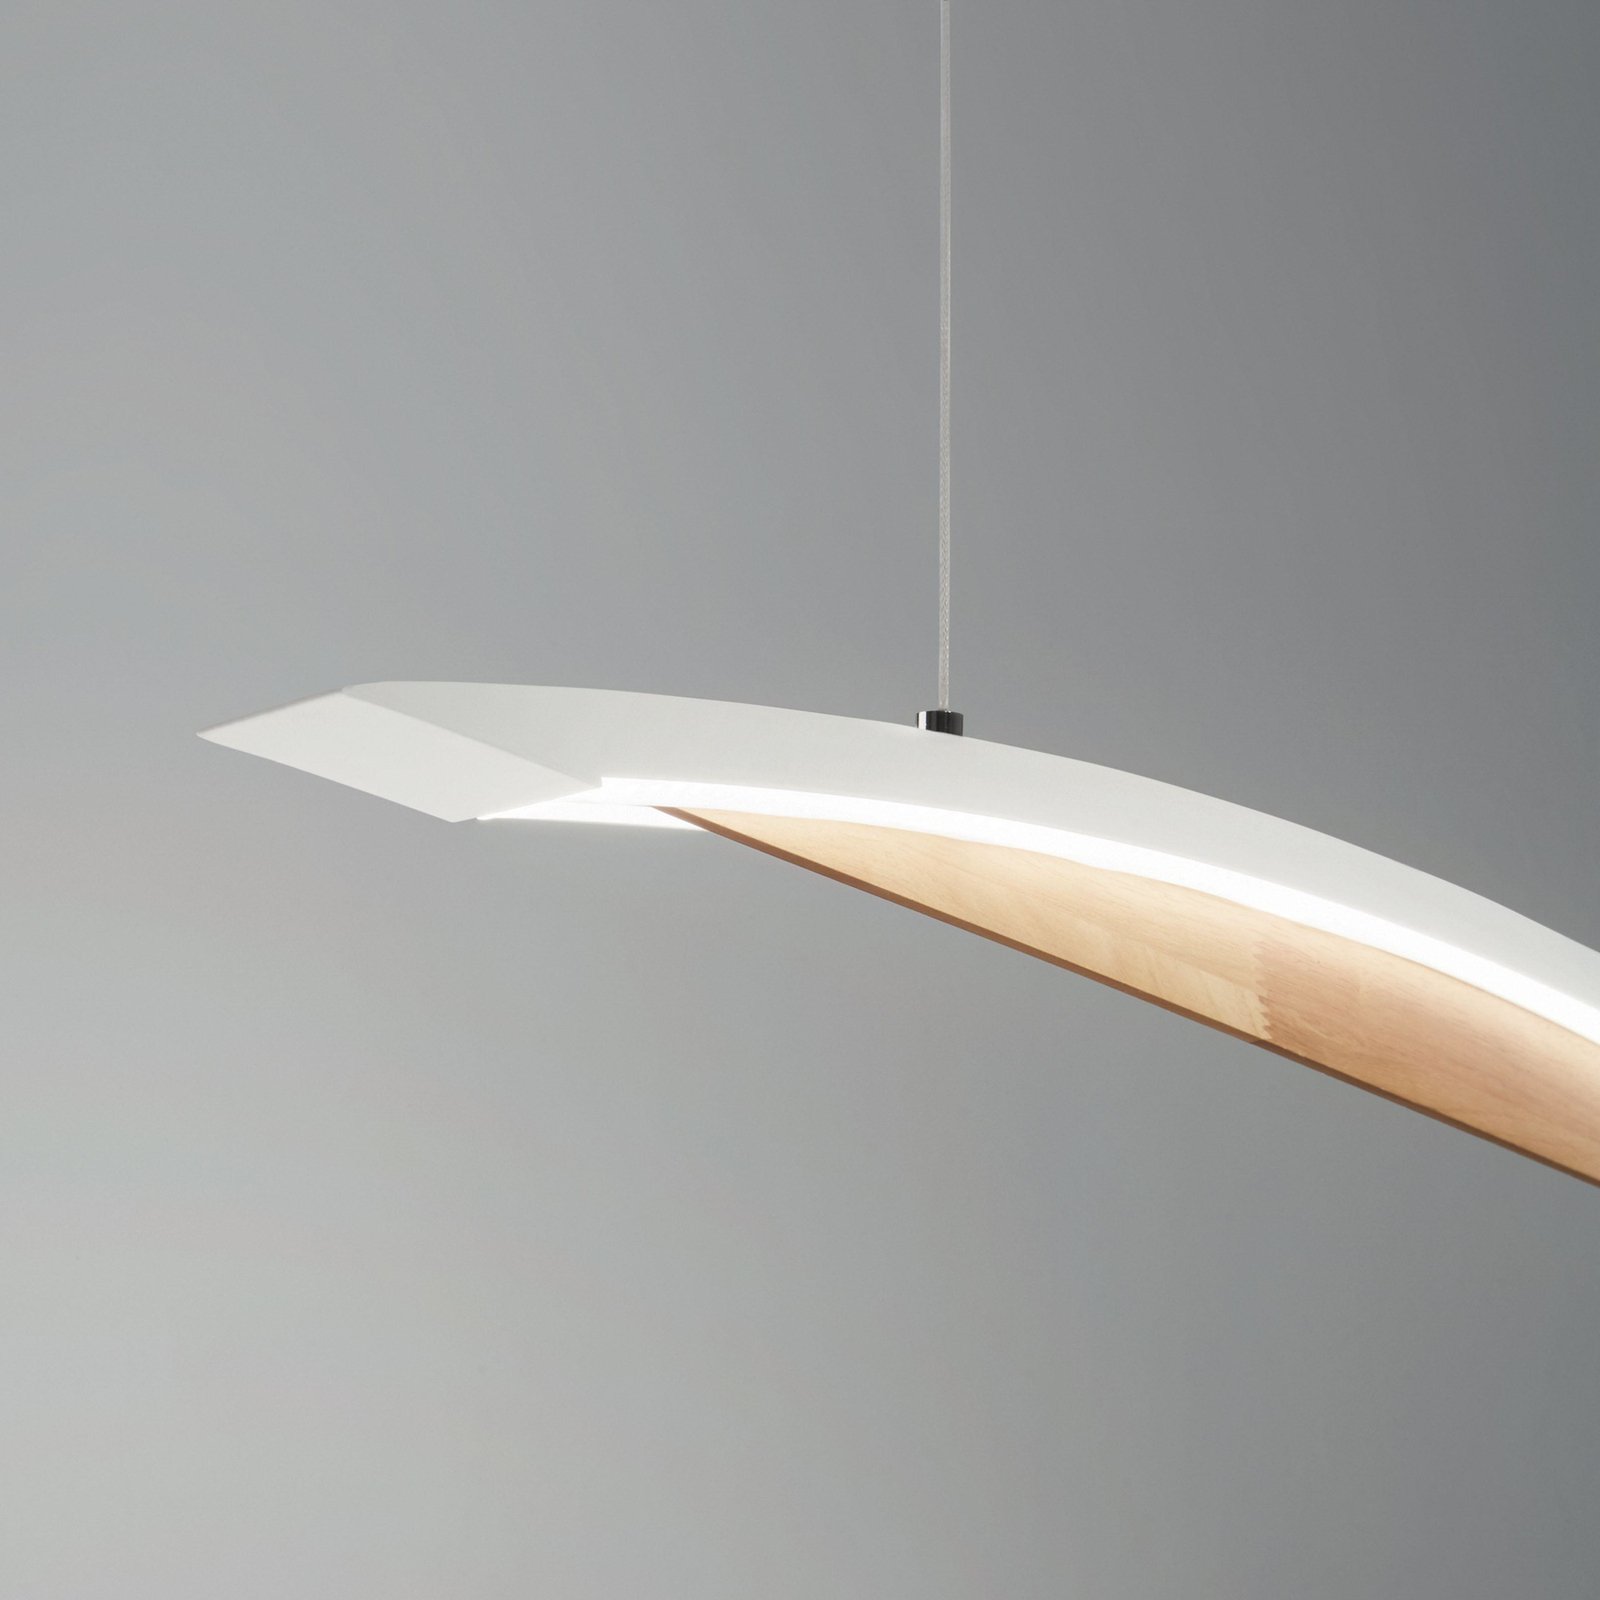 Cordoba LED lampă suspendată, lungime 110 cm, metal/lemn, reglabilă